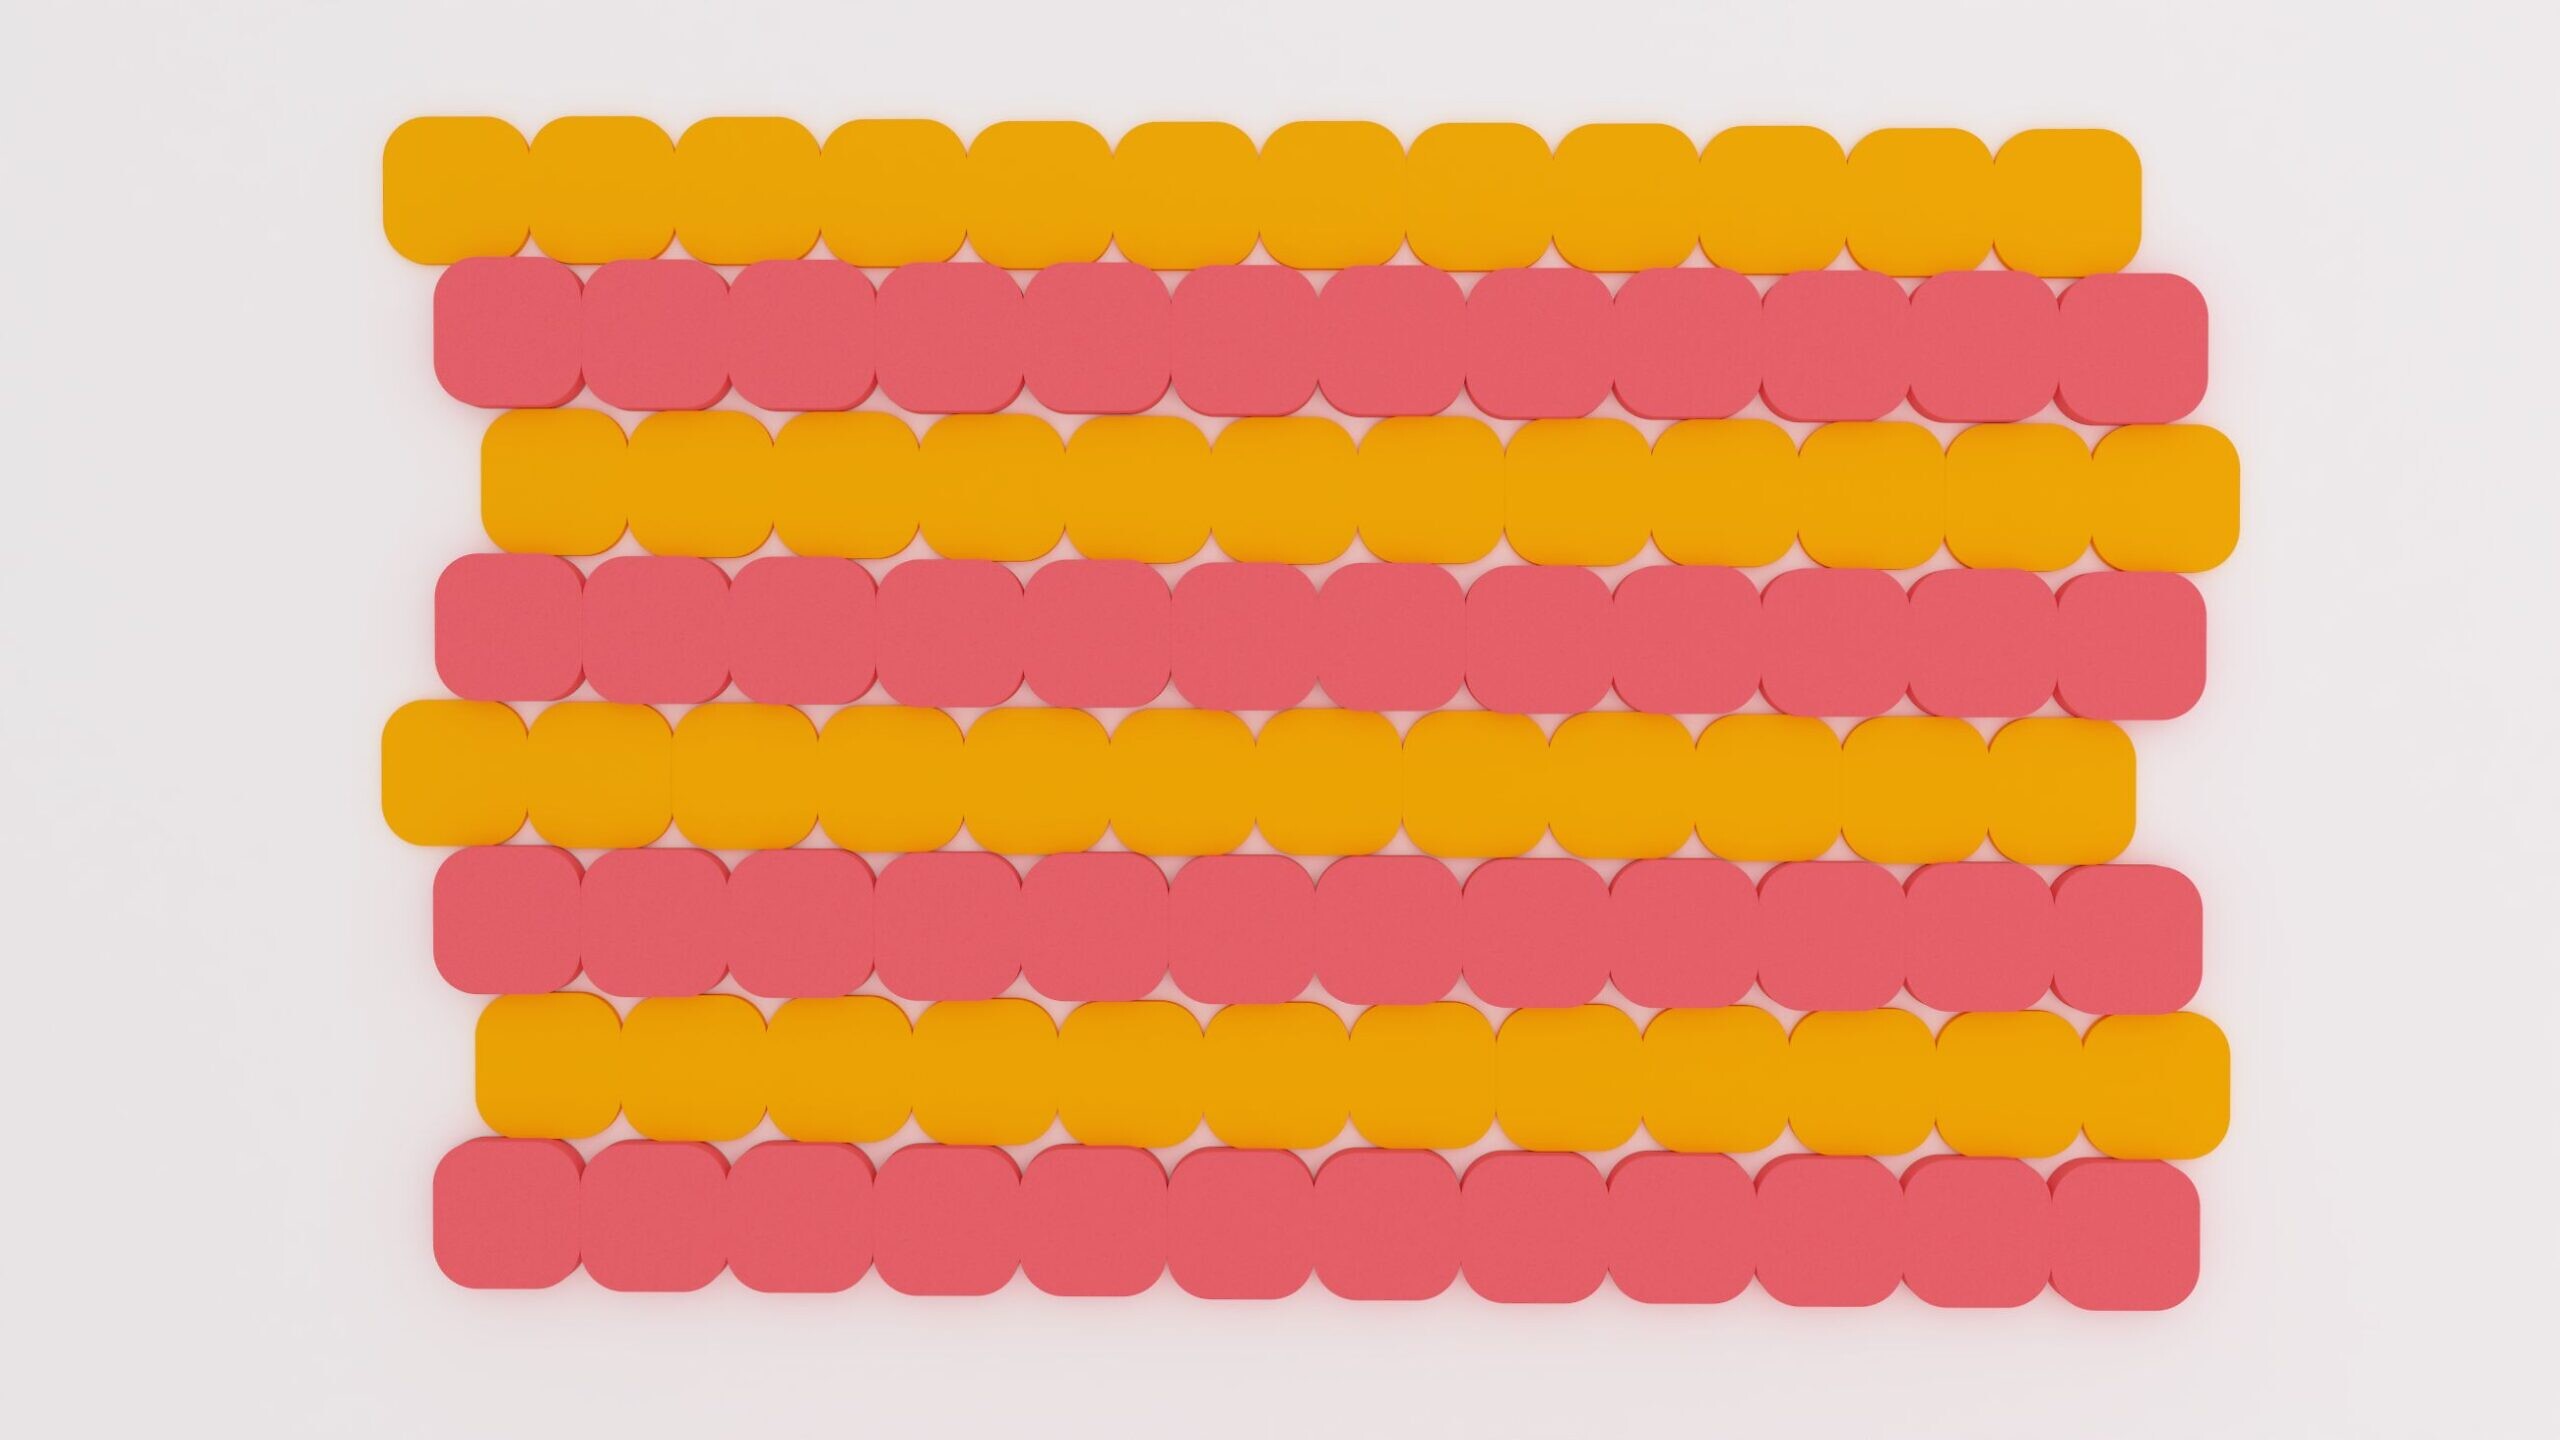 Panel akustyczny Fluffo o wzorze S, składający się z żółtych i różowych elementów